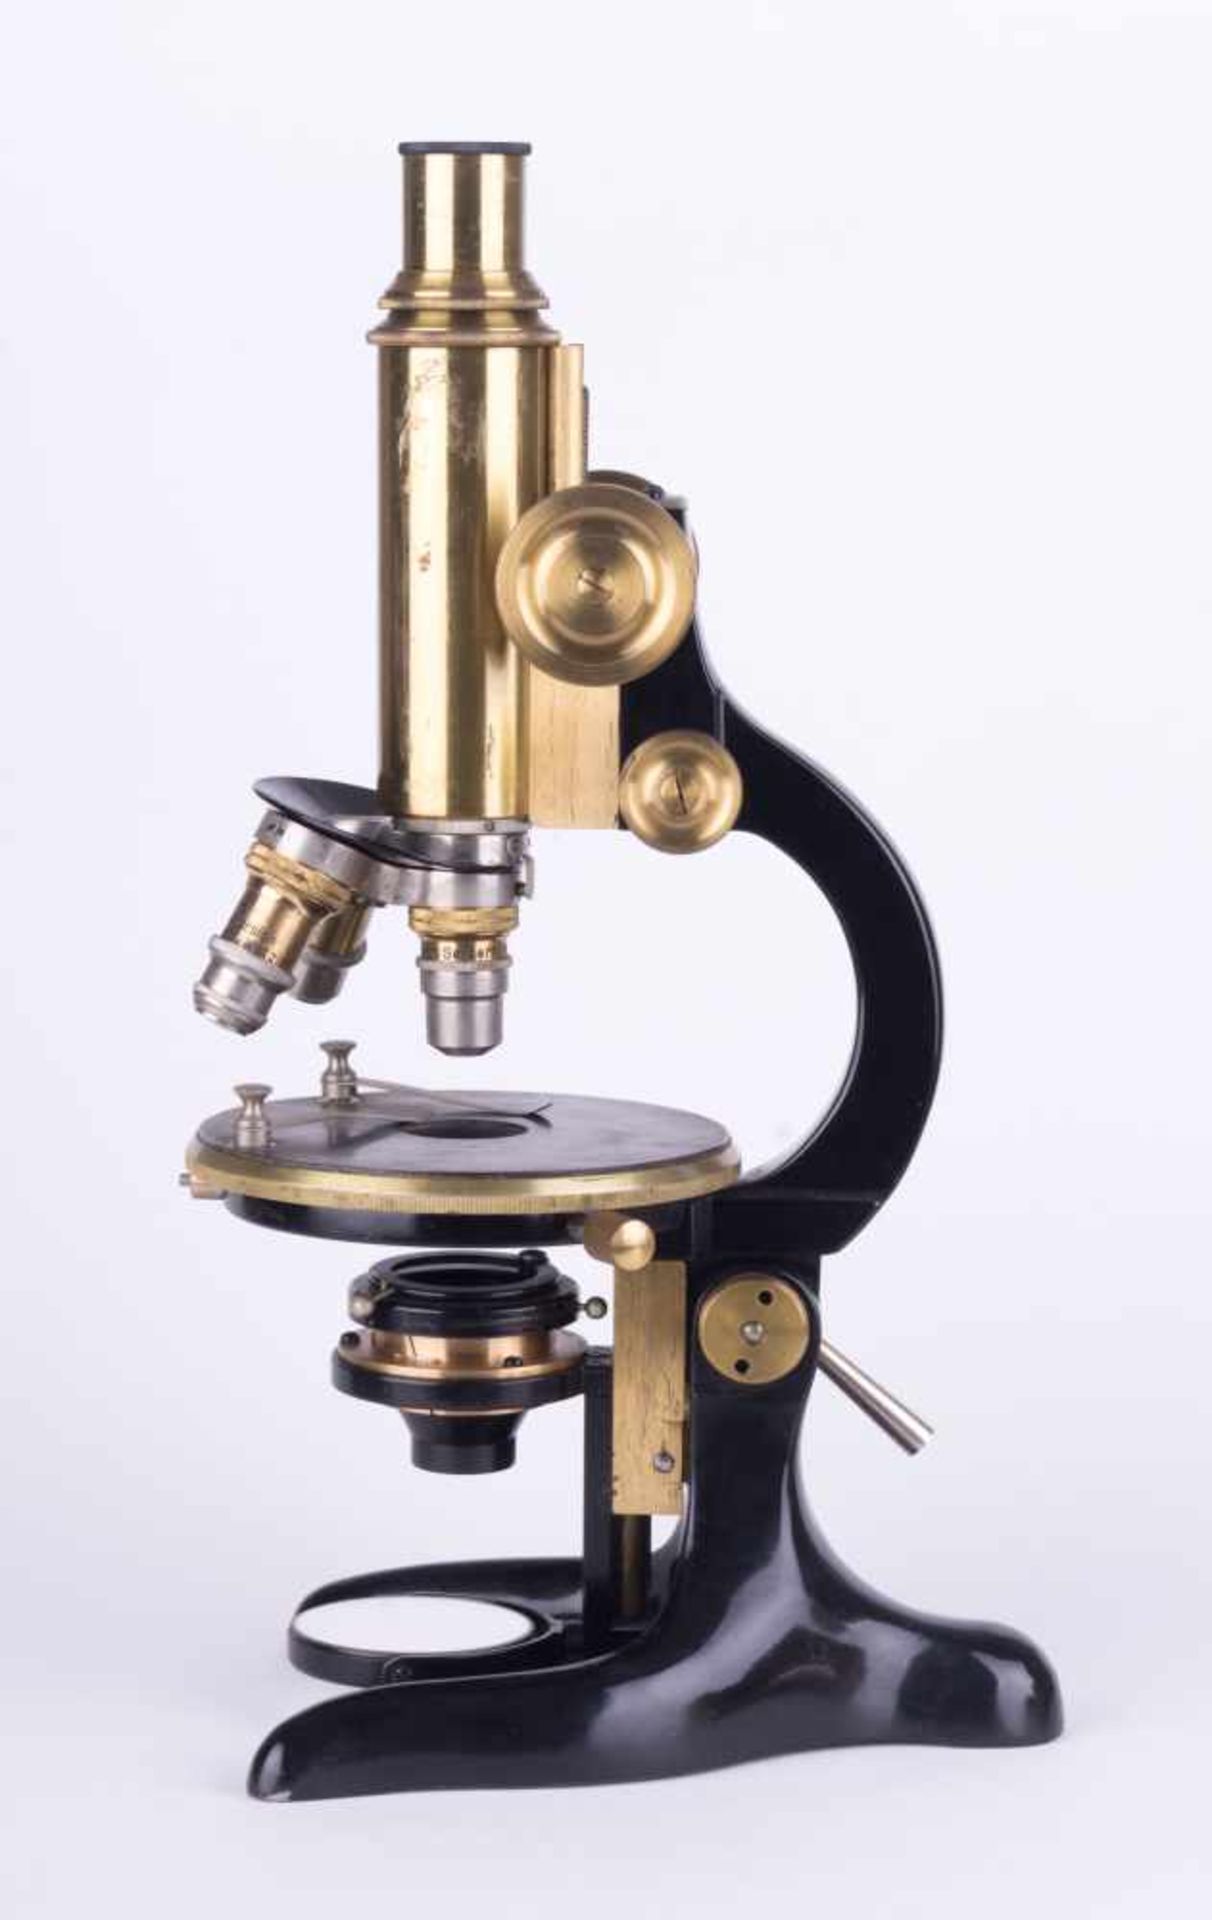 Mikroskop Otto Seibert Wetzlar im Original Holzkasten, Microscope Otto Seibert Wetzlar in the